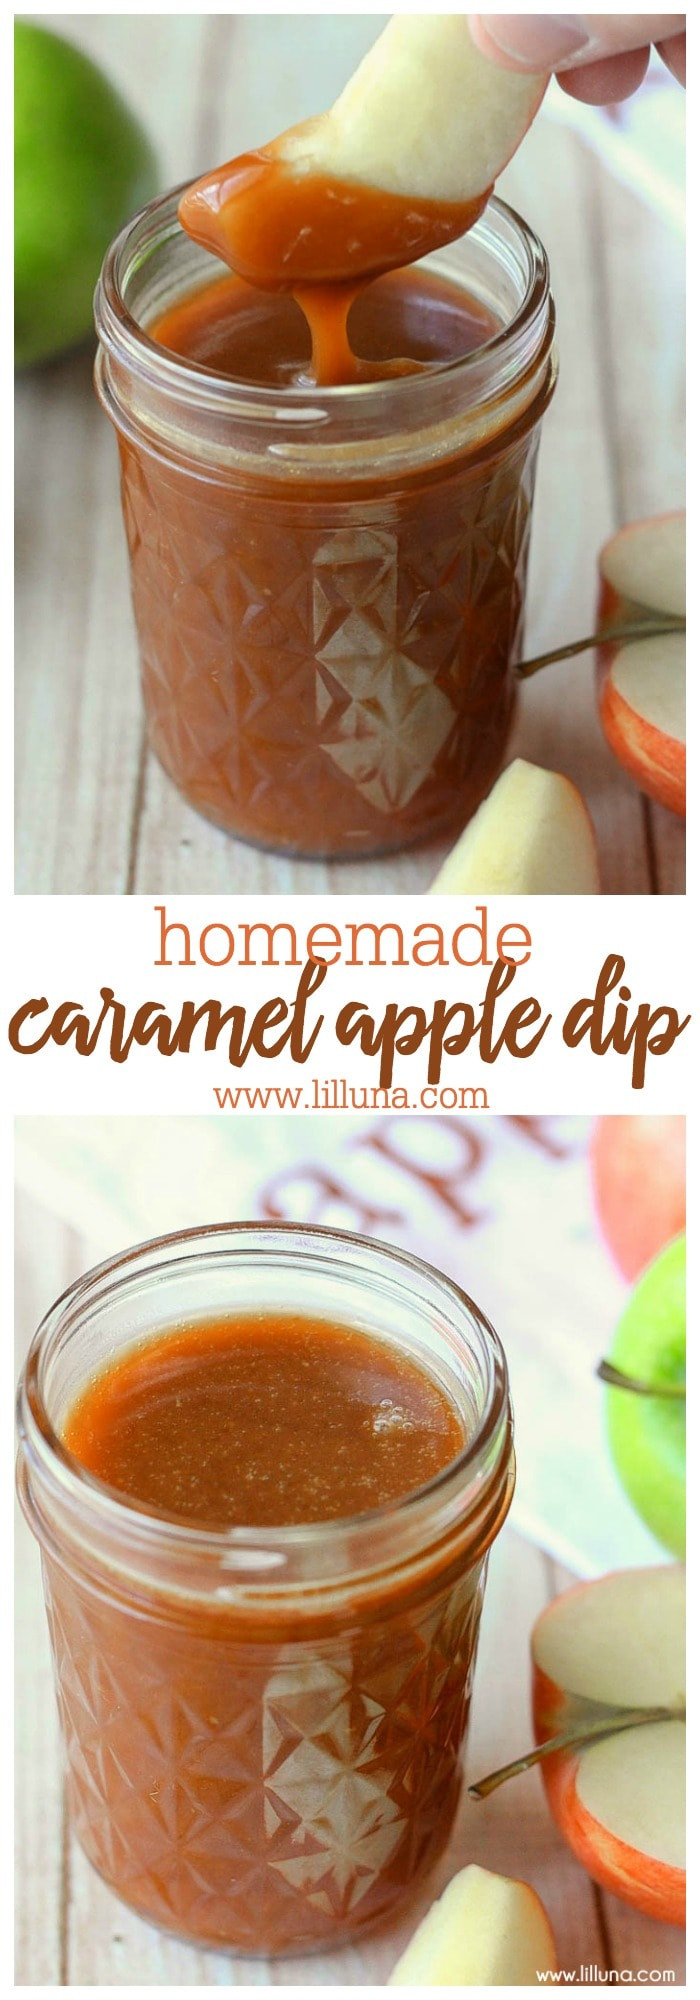 Caramel For Dipping Apples
 Homemade Caramel Apple Dip